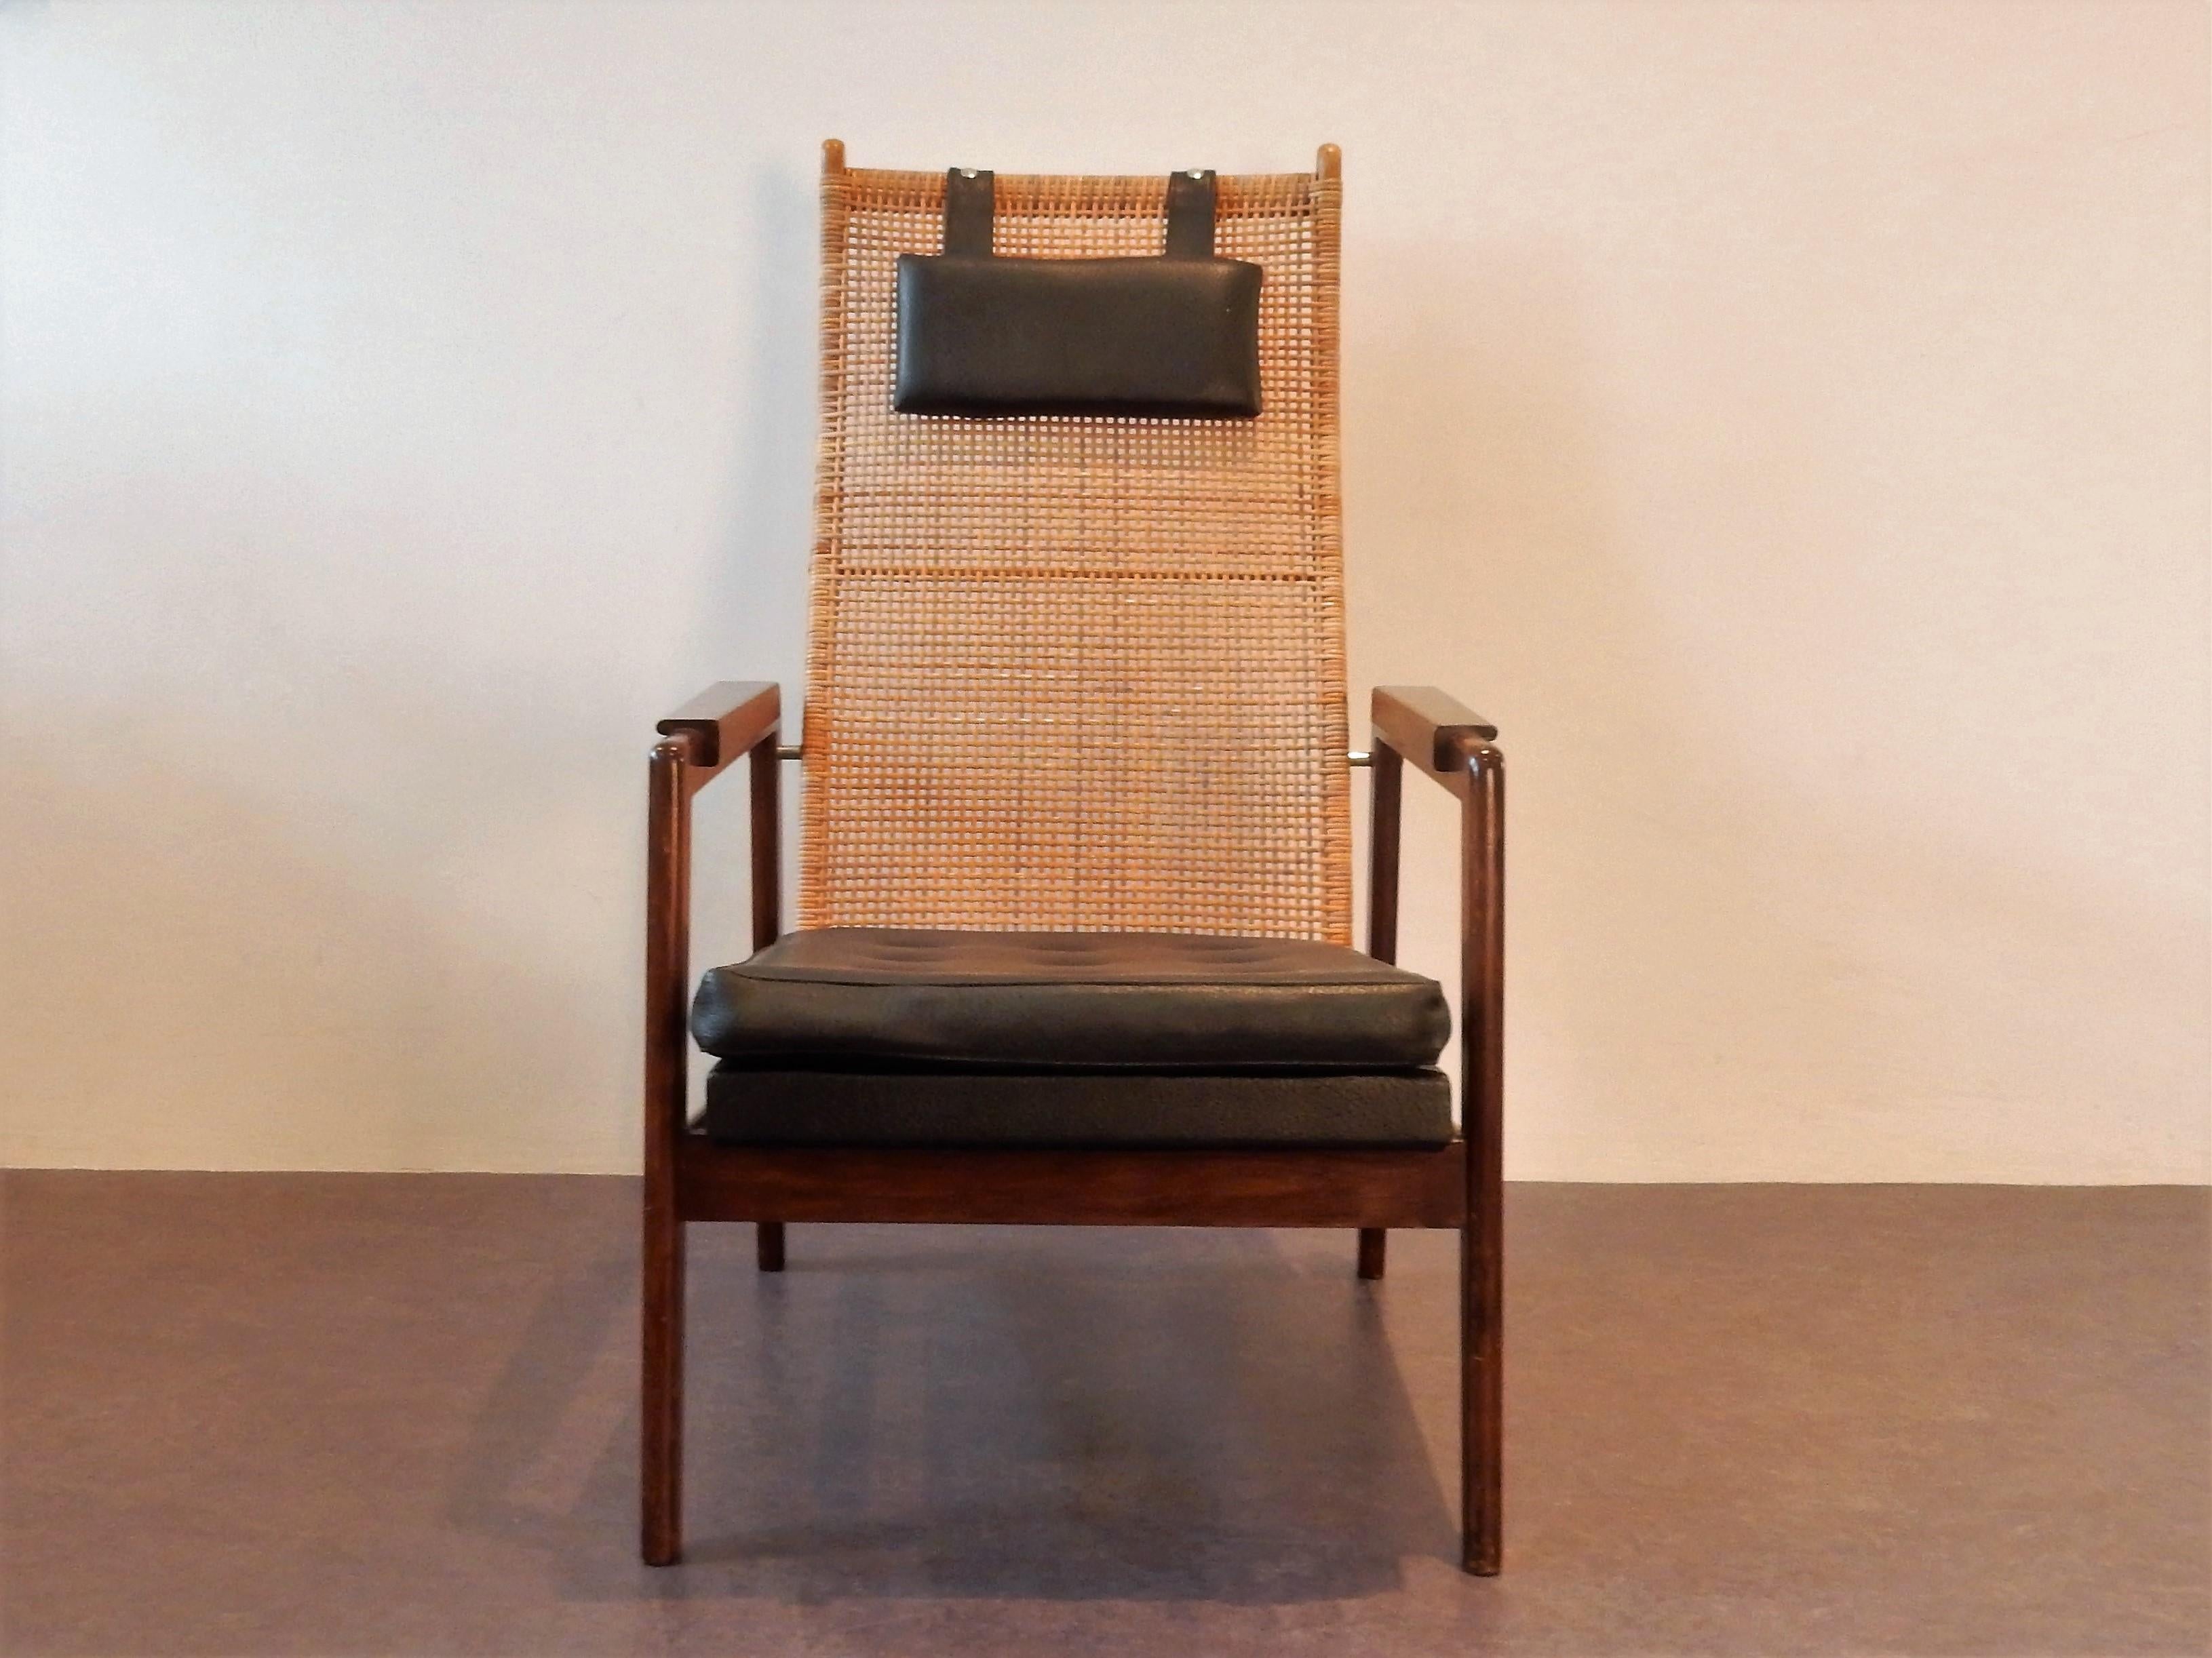 Cette chaise longue a été conçue par P.J. Muntendam pour Gebroeders Jonkers ou en anglais, les frères Jonkers. Les frères Jonkers étaient célèbres pour leurs chaises et meubles en rotin. Cette chaise a un dossier en rotin, des coussins en cuir de